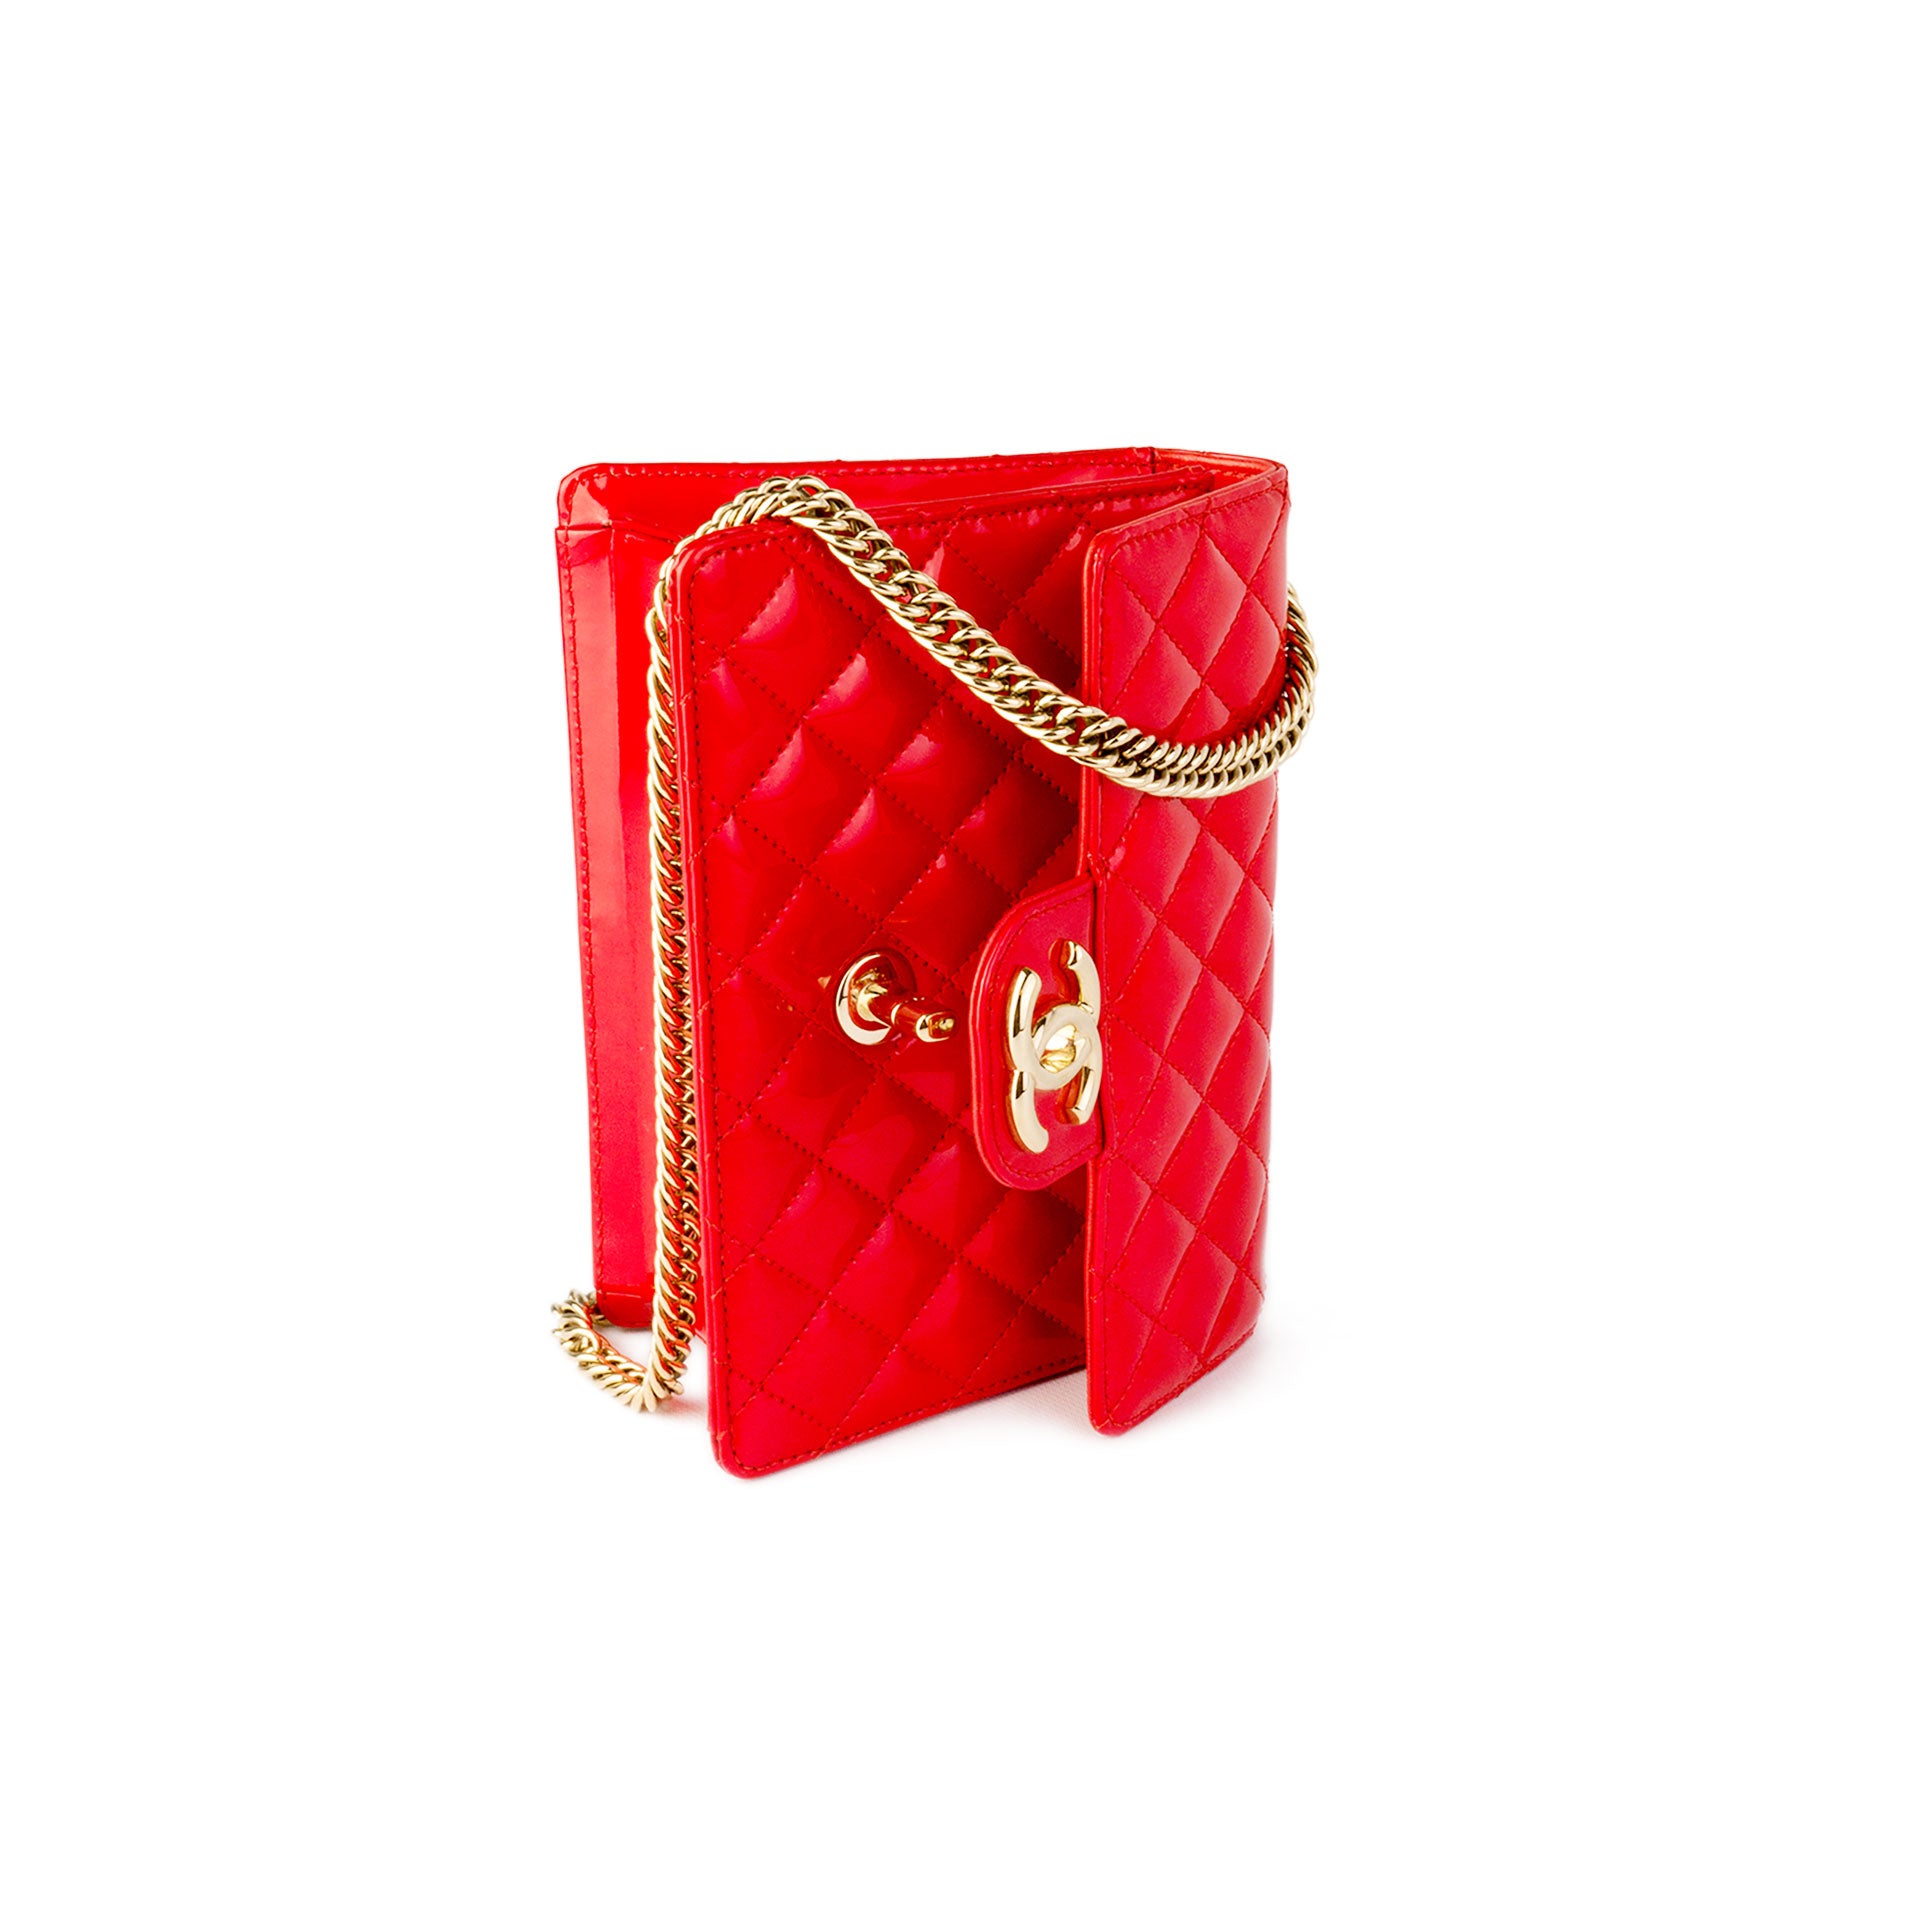 CHANEL Mini Flap Bag RARE - Chelsea Vintage Couture